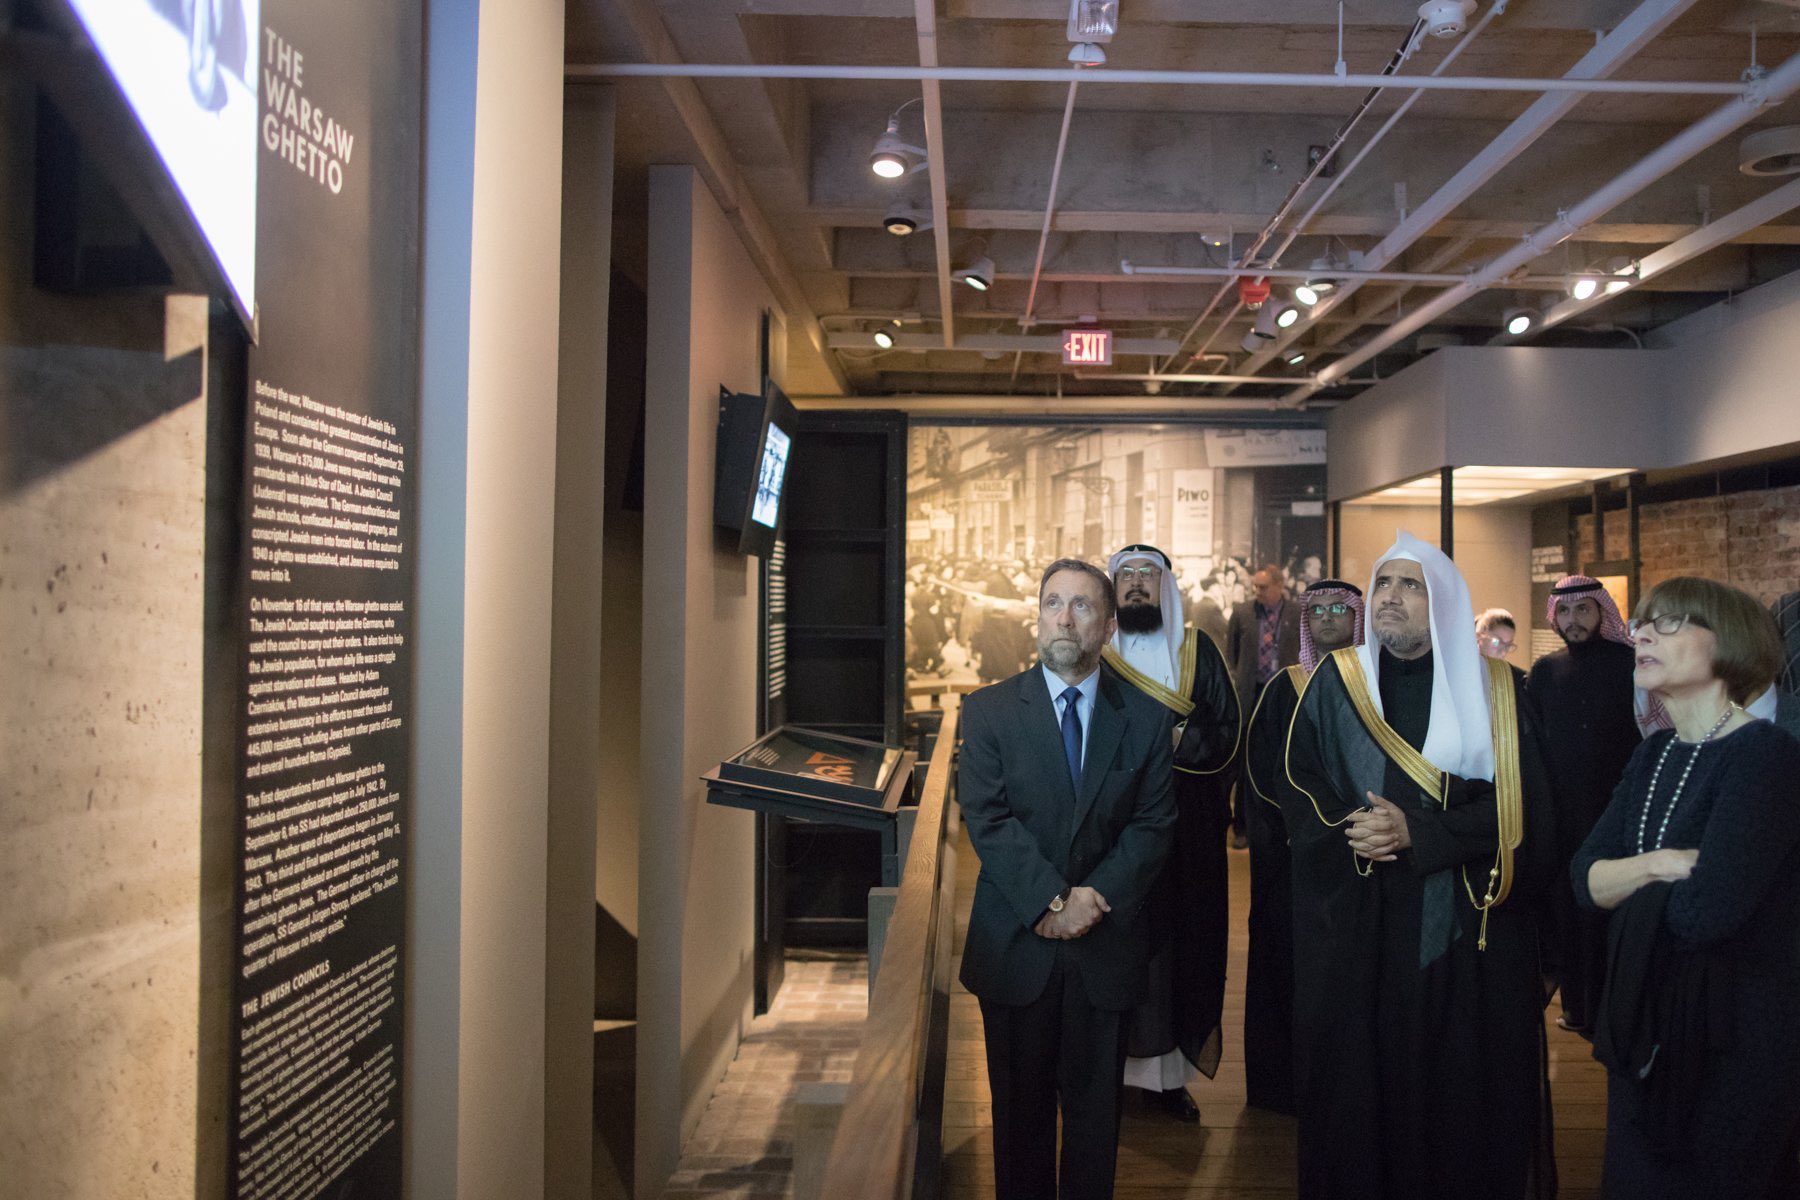 ڈاکٹر محمد العیسی نے گذشتہ سال بروز جمعرات واشنگنٹن ڈی سی میں ہولو کوسٹ میوزیم کا دورہ کیا